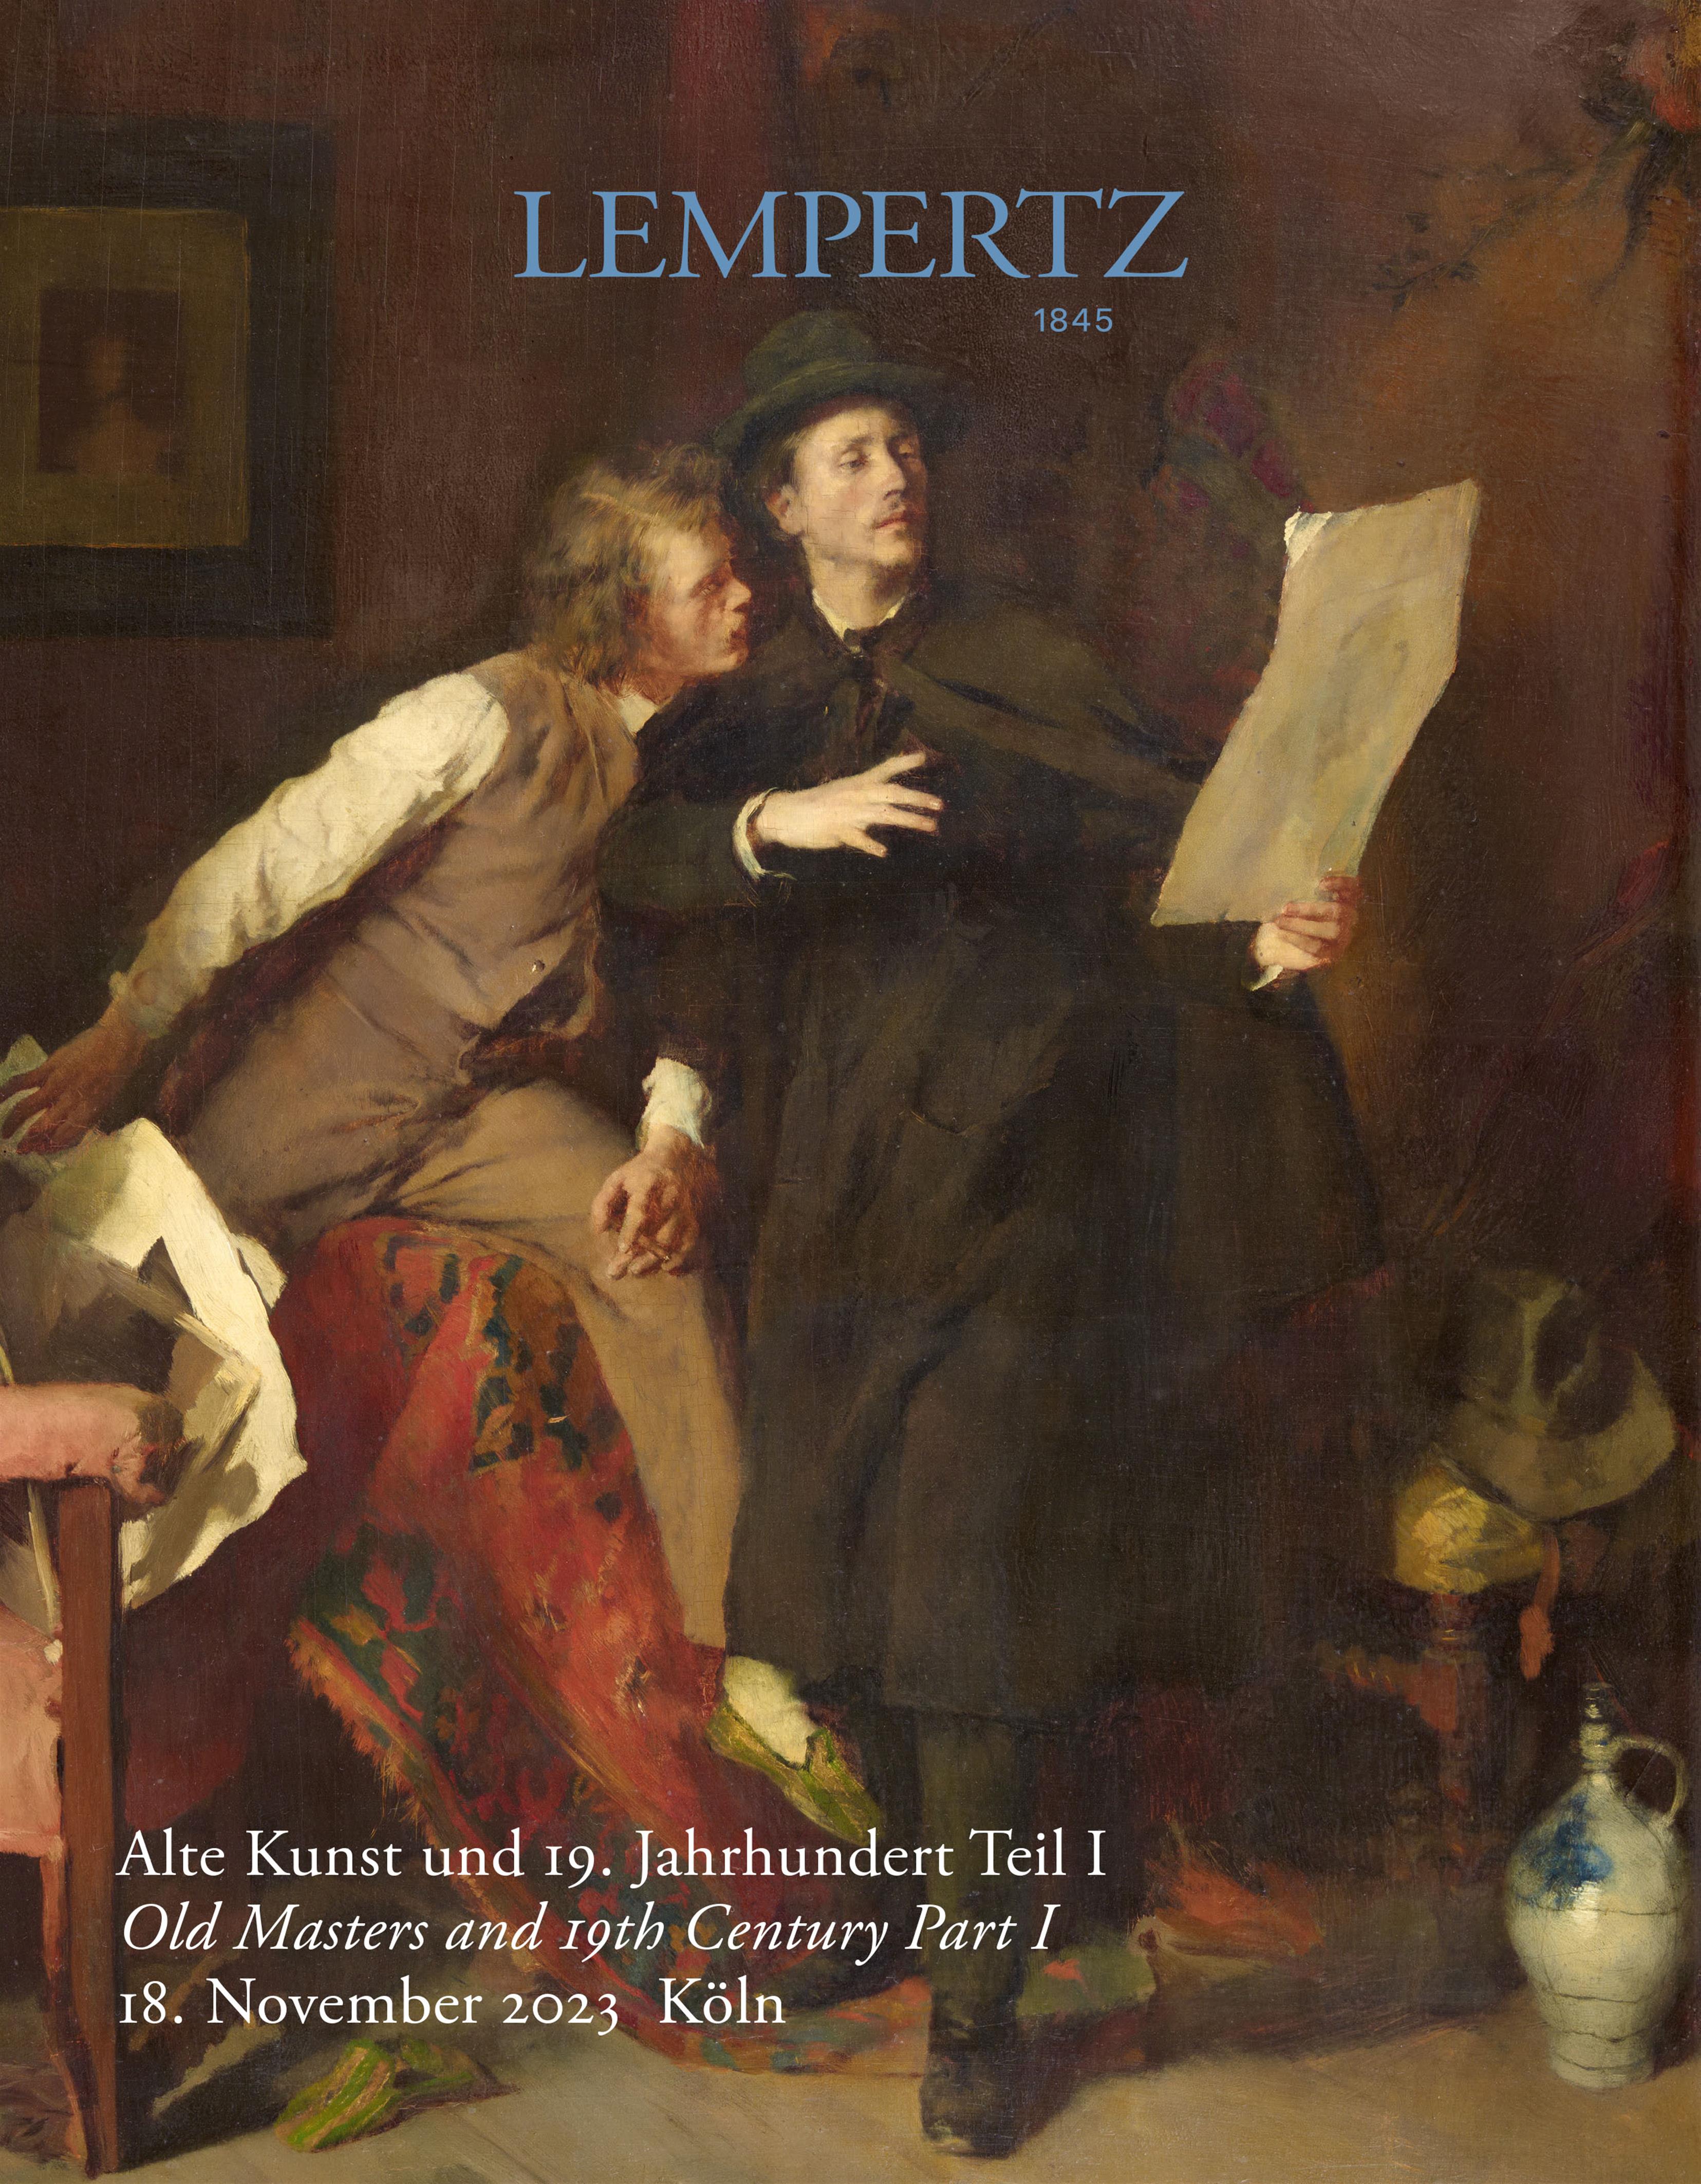 Auktionskatalog - Alte Kunst und 19. Jahrhundert, Teil I - Online Katalog - Auktion 1231 – Ersteigern Sie hochwertige Kunst in der nächsten Lempertz-Auktion!